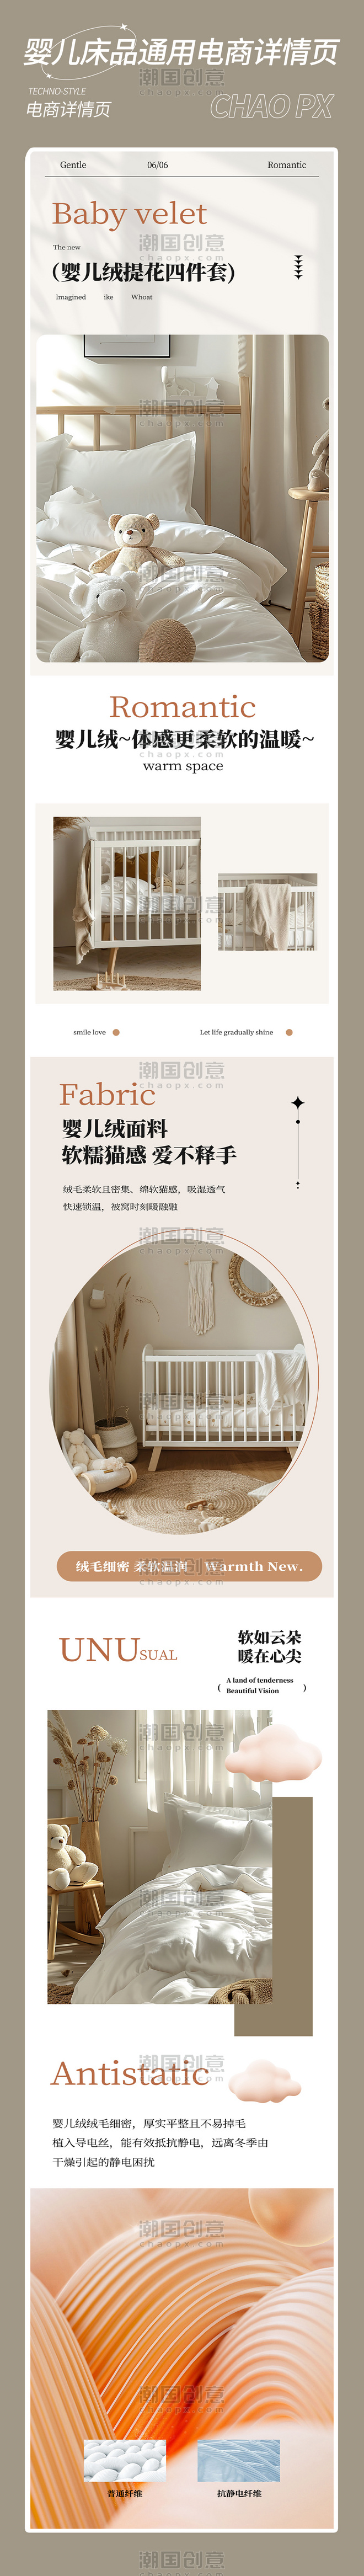 家纺母婴四件套婴儿床品通用电商促销购物详情页